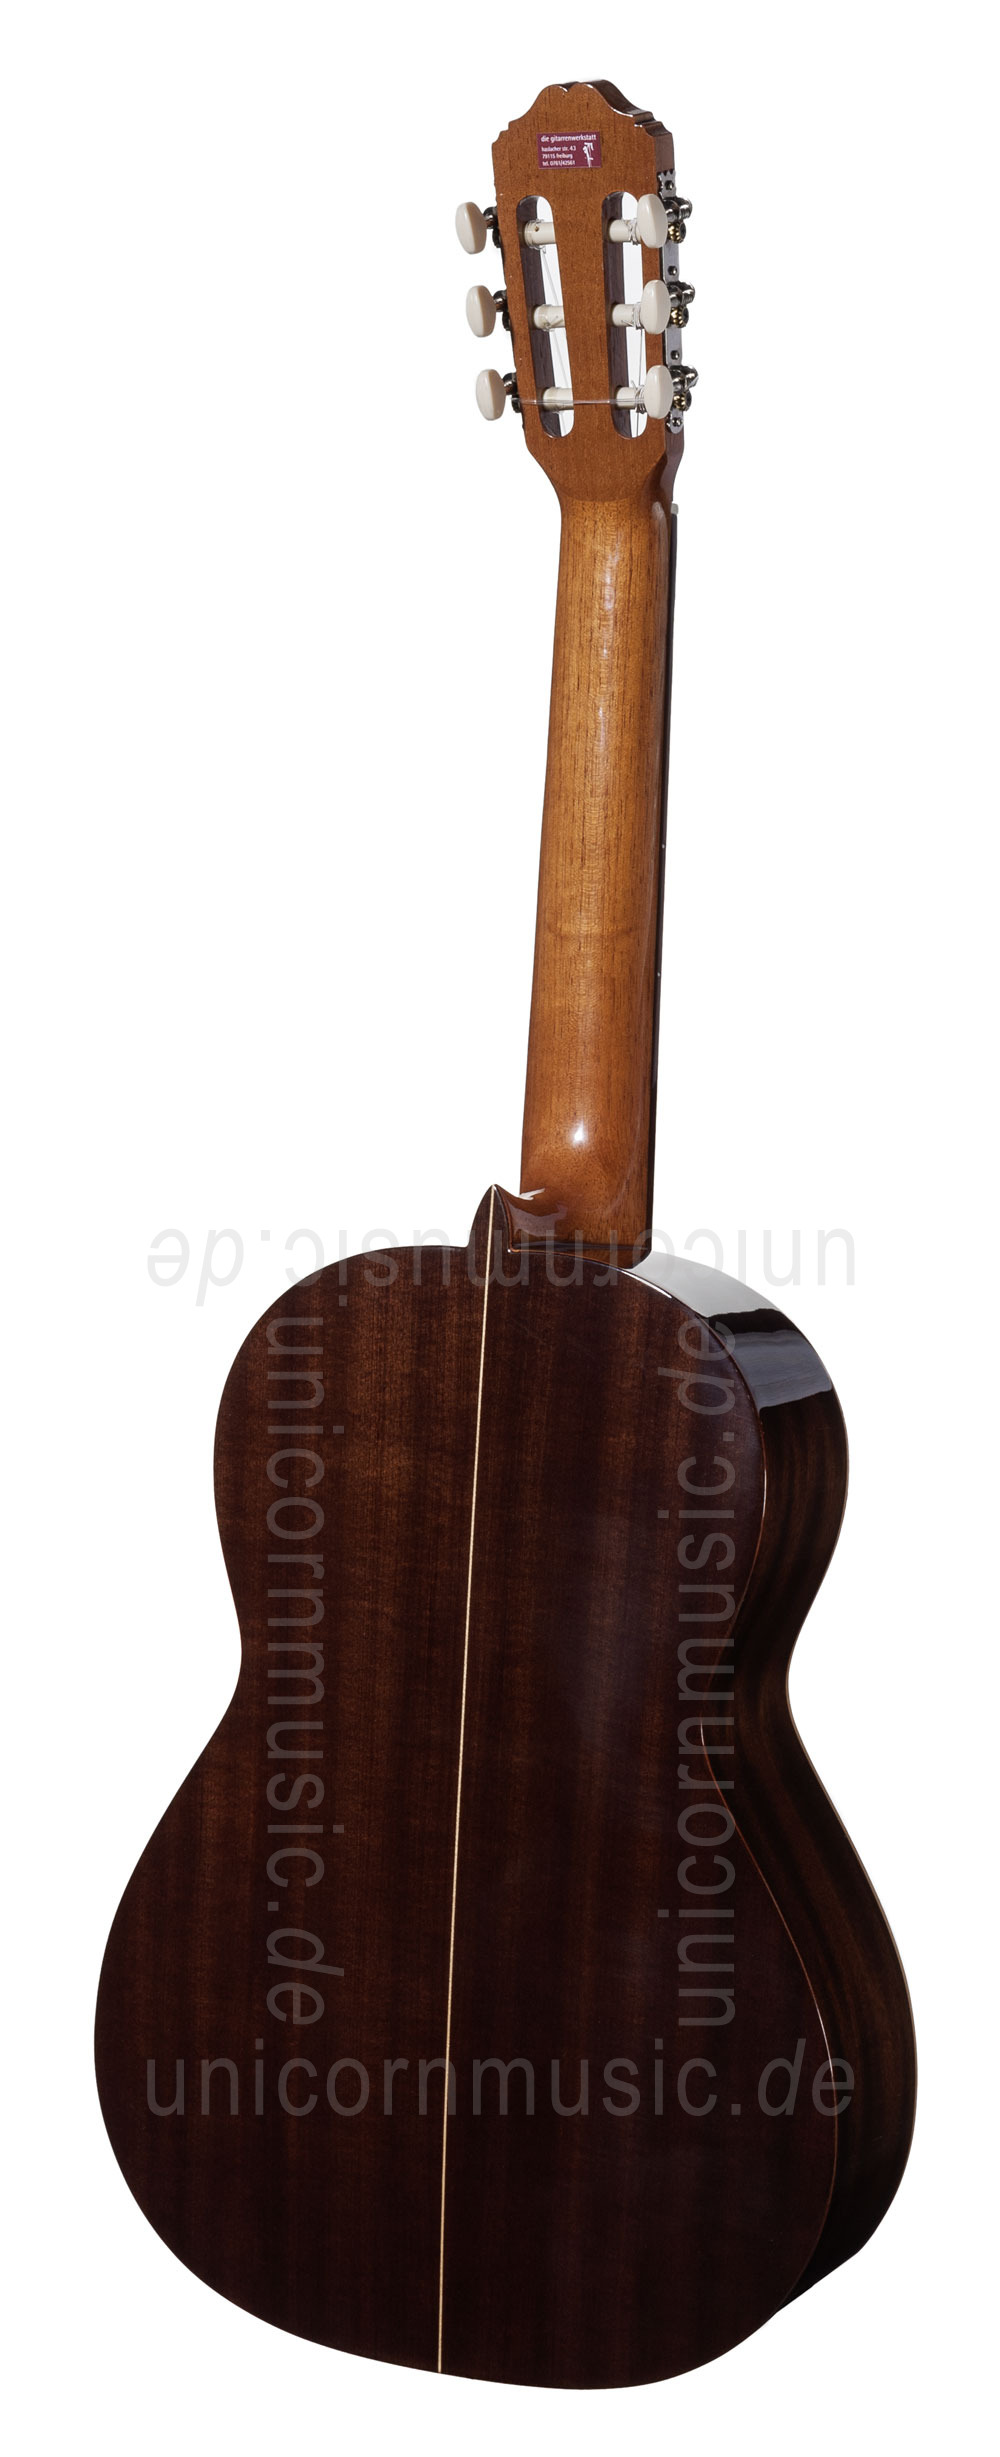 to article description / price Spanish Classical Guitar VALDEZ MODEL 63 SENORITA LH (ladies